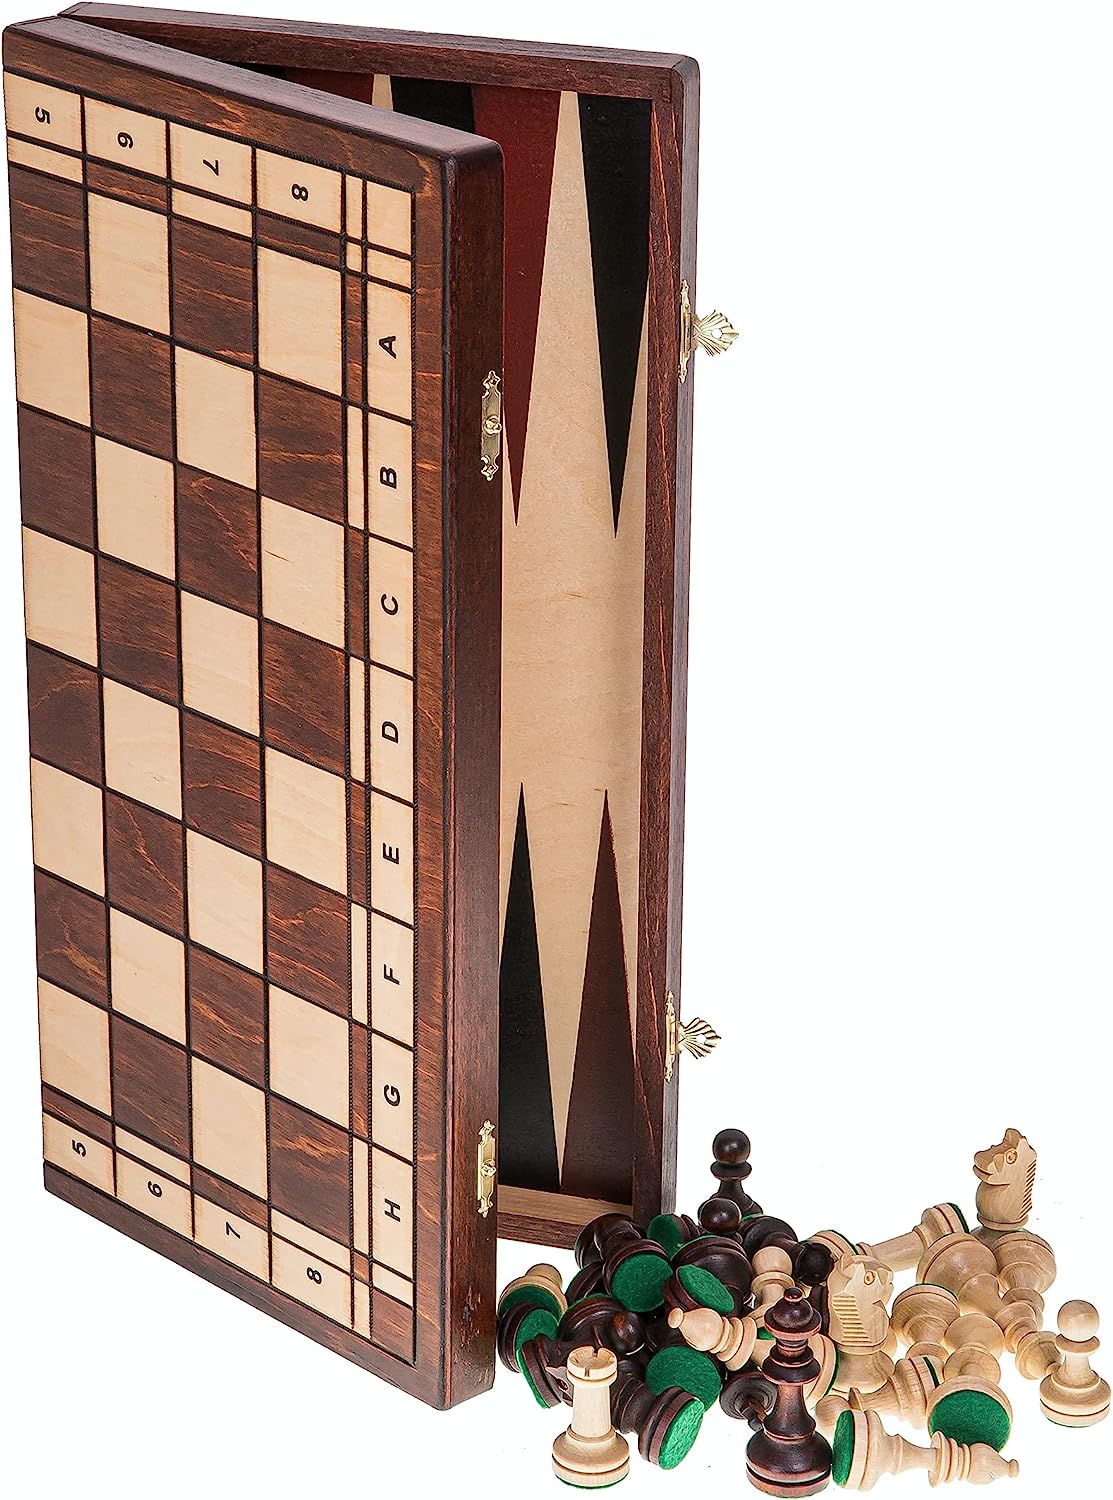 Ver categoría de ajedrez de madera grande senador 3 en 1 square